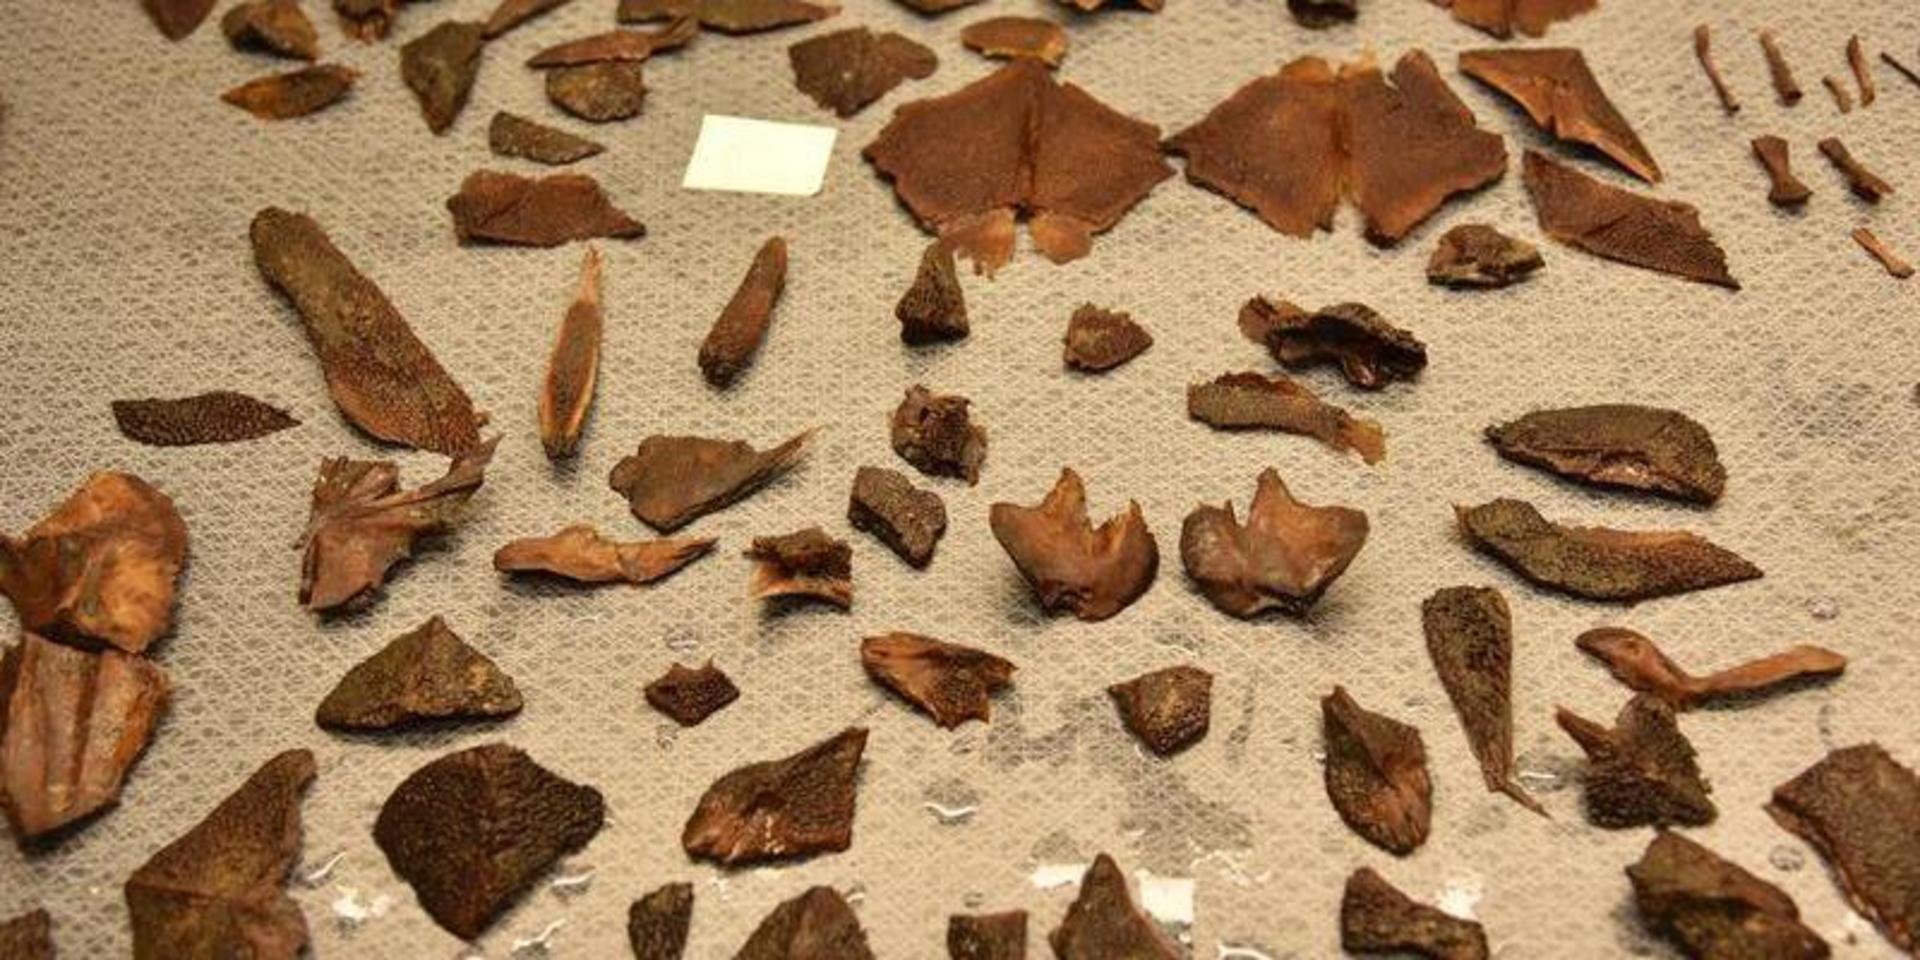 Det fanns ovanligt mycket rester – som dessutom var välbevarade – att analysera, berättar Stella Macheridis, osteolog och forskare vid Lunds universitet. Benplåten tros tillhöra en uppemot två meter lång atlantisk stör. 